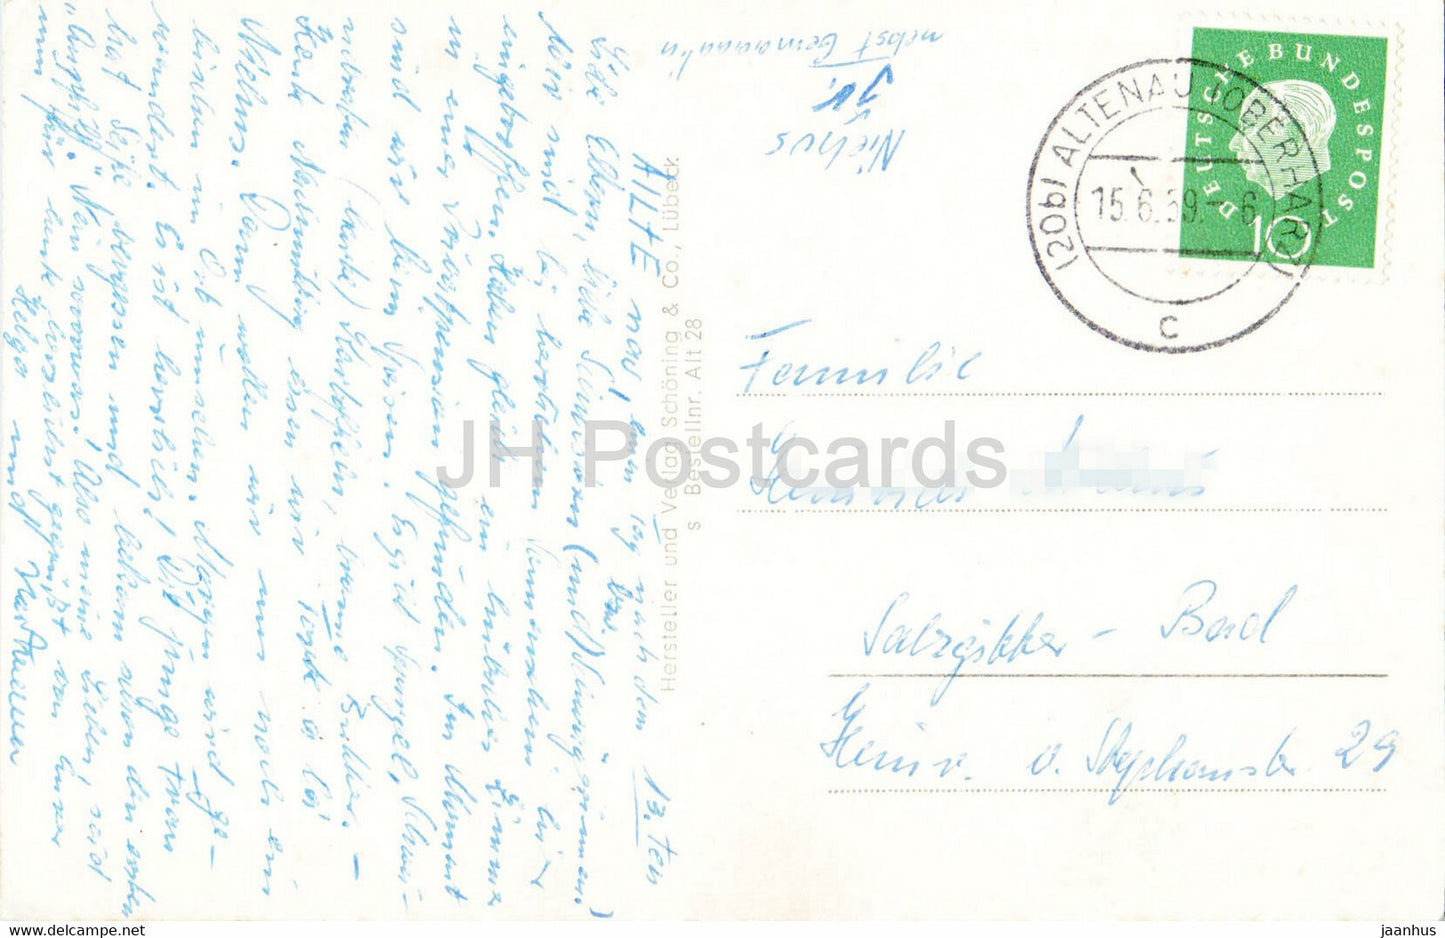 Altenau Oberharz - Partie am Dammgraben - alte Postkarte - 1959 - Deutschland - gebraucht